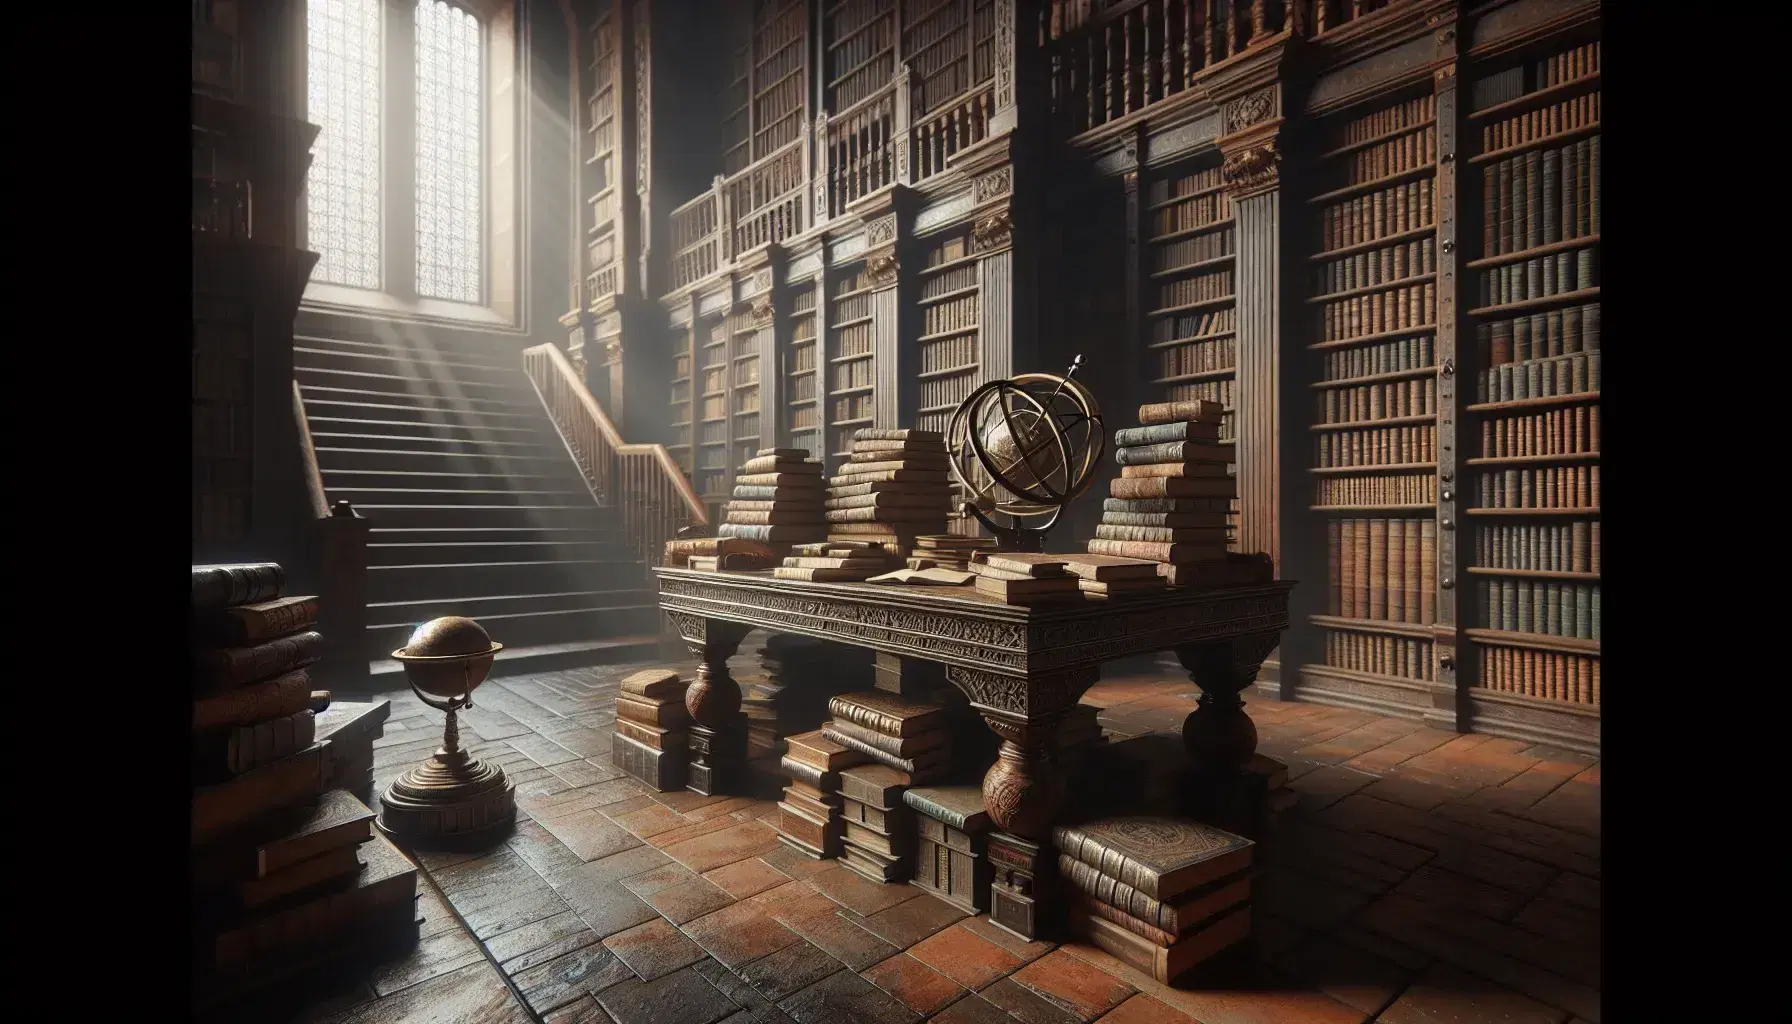 Biblioteca antigua con estanterías de madera oscura llenas de libros, mesa central con libros abiertos, esfera armilar y globo antiguo bajo la luz natural de una ventana.